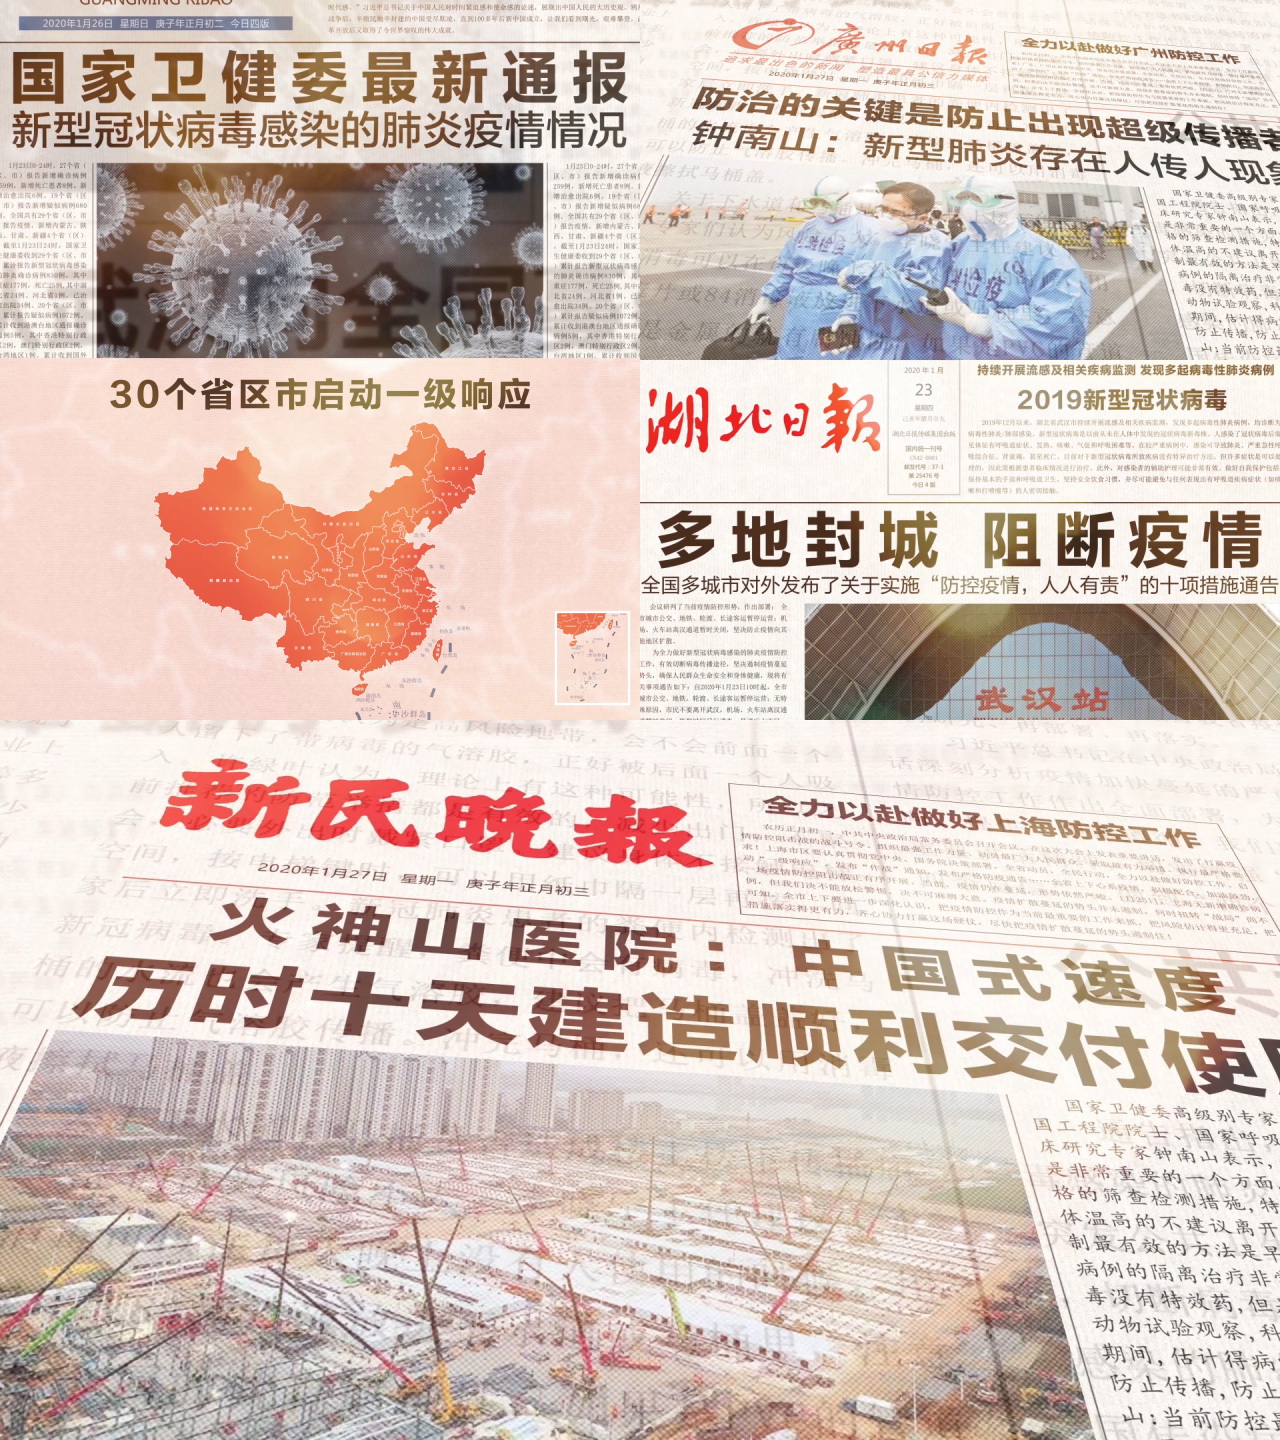 湖北武汉疫情新闻报道展示视频